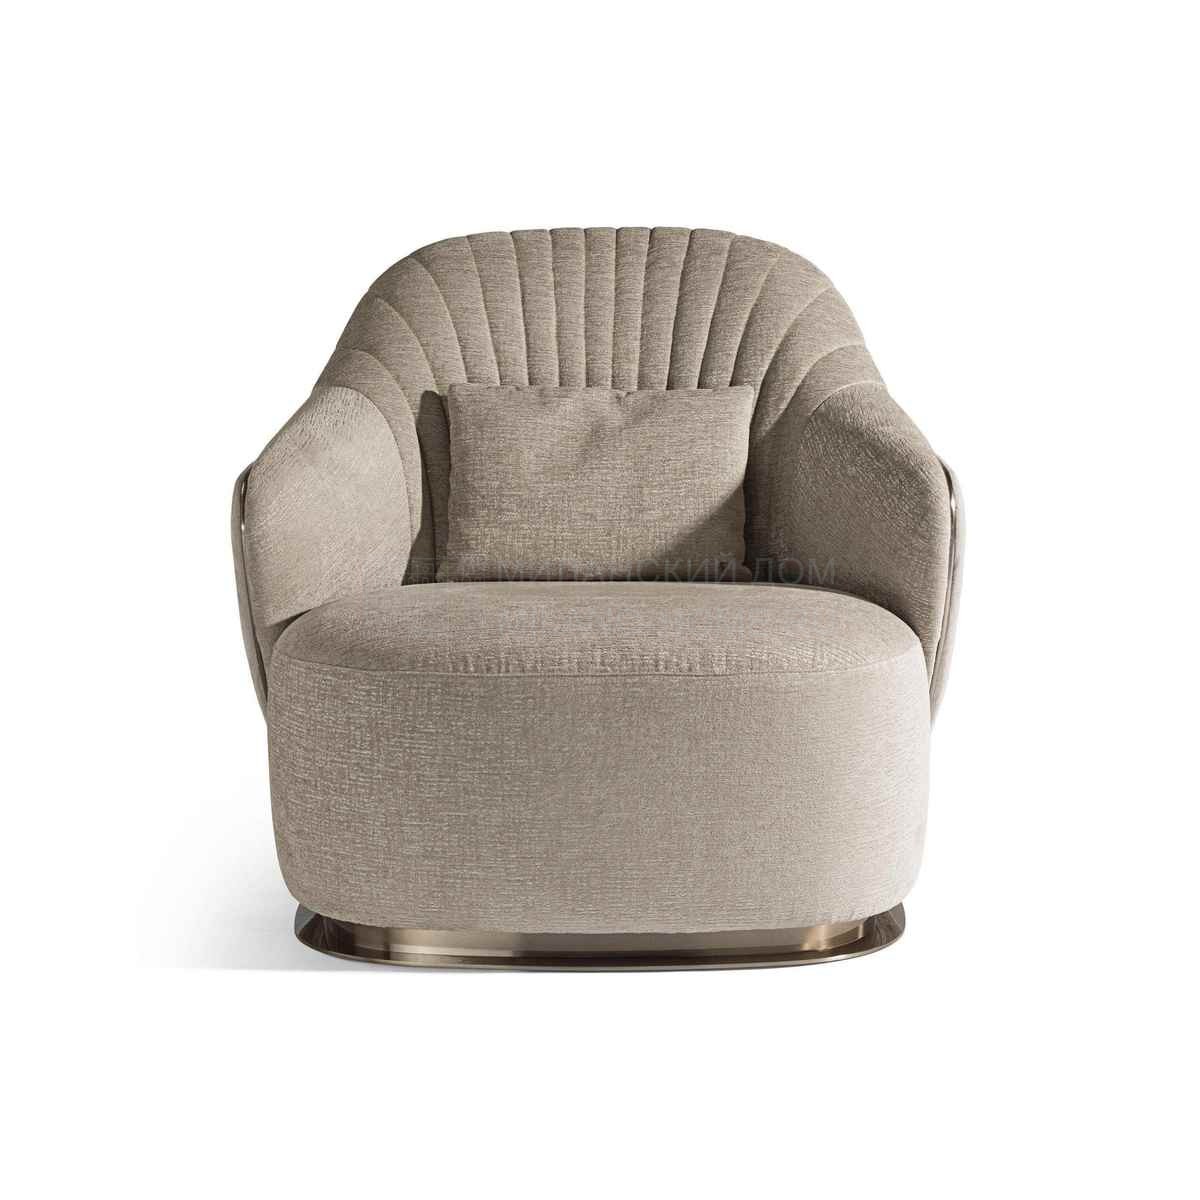 Кресло Adele armchair из Италии фабрики IPE CAVALLI VISIONNAIRE